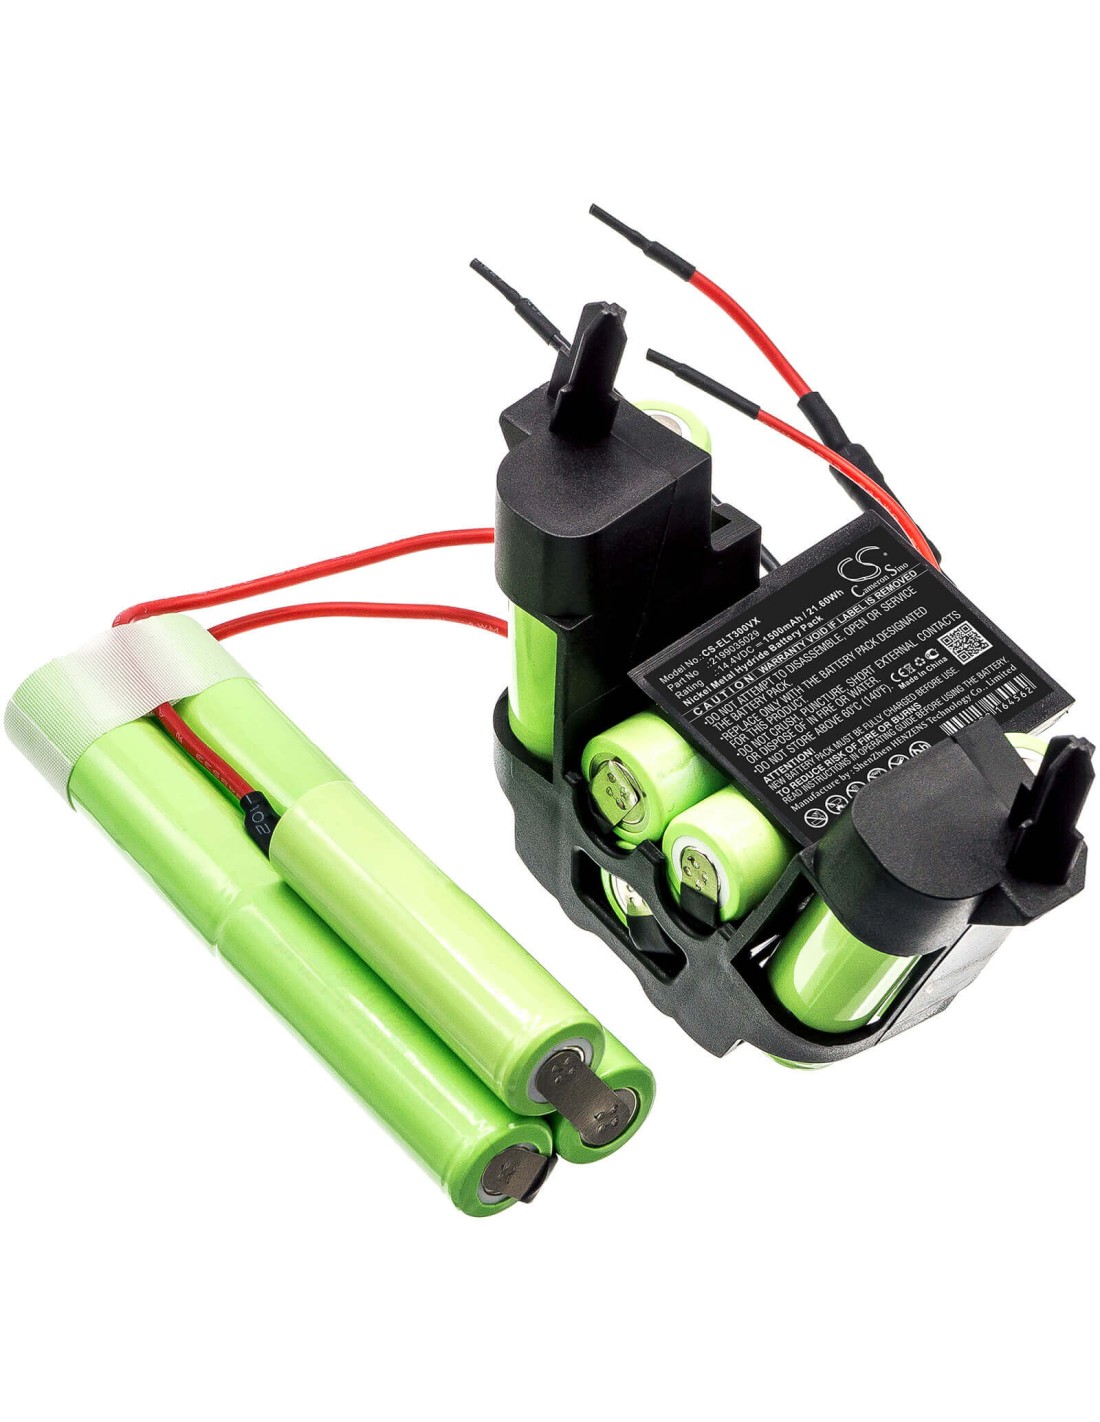 Battery for Aeg, 273713, 900273725, 900273736 14.4V, 1500mAh - 21.60Wh